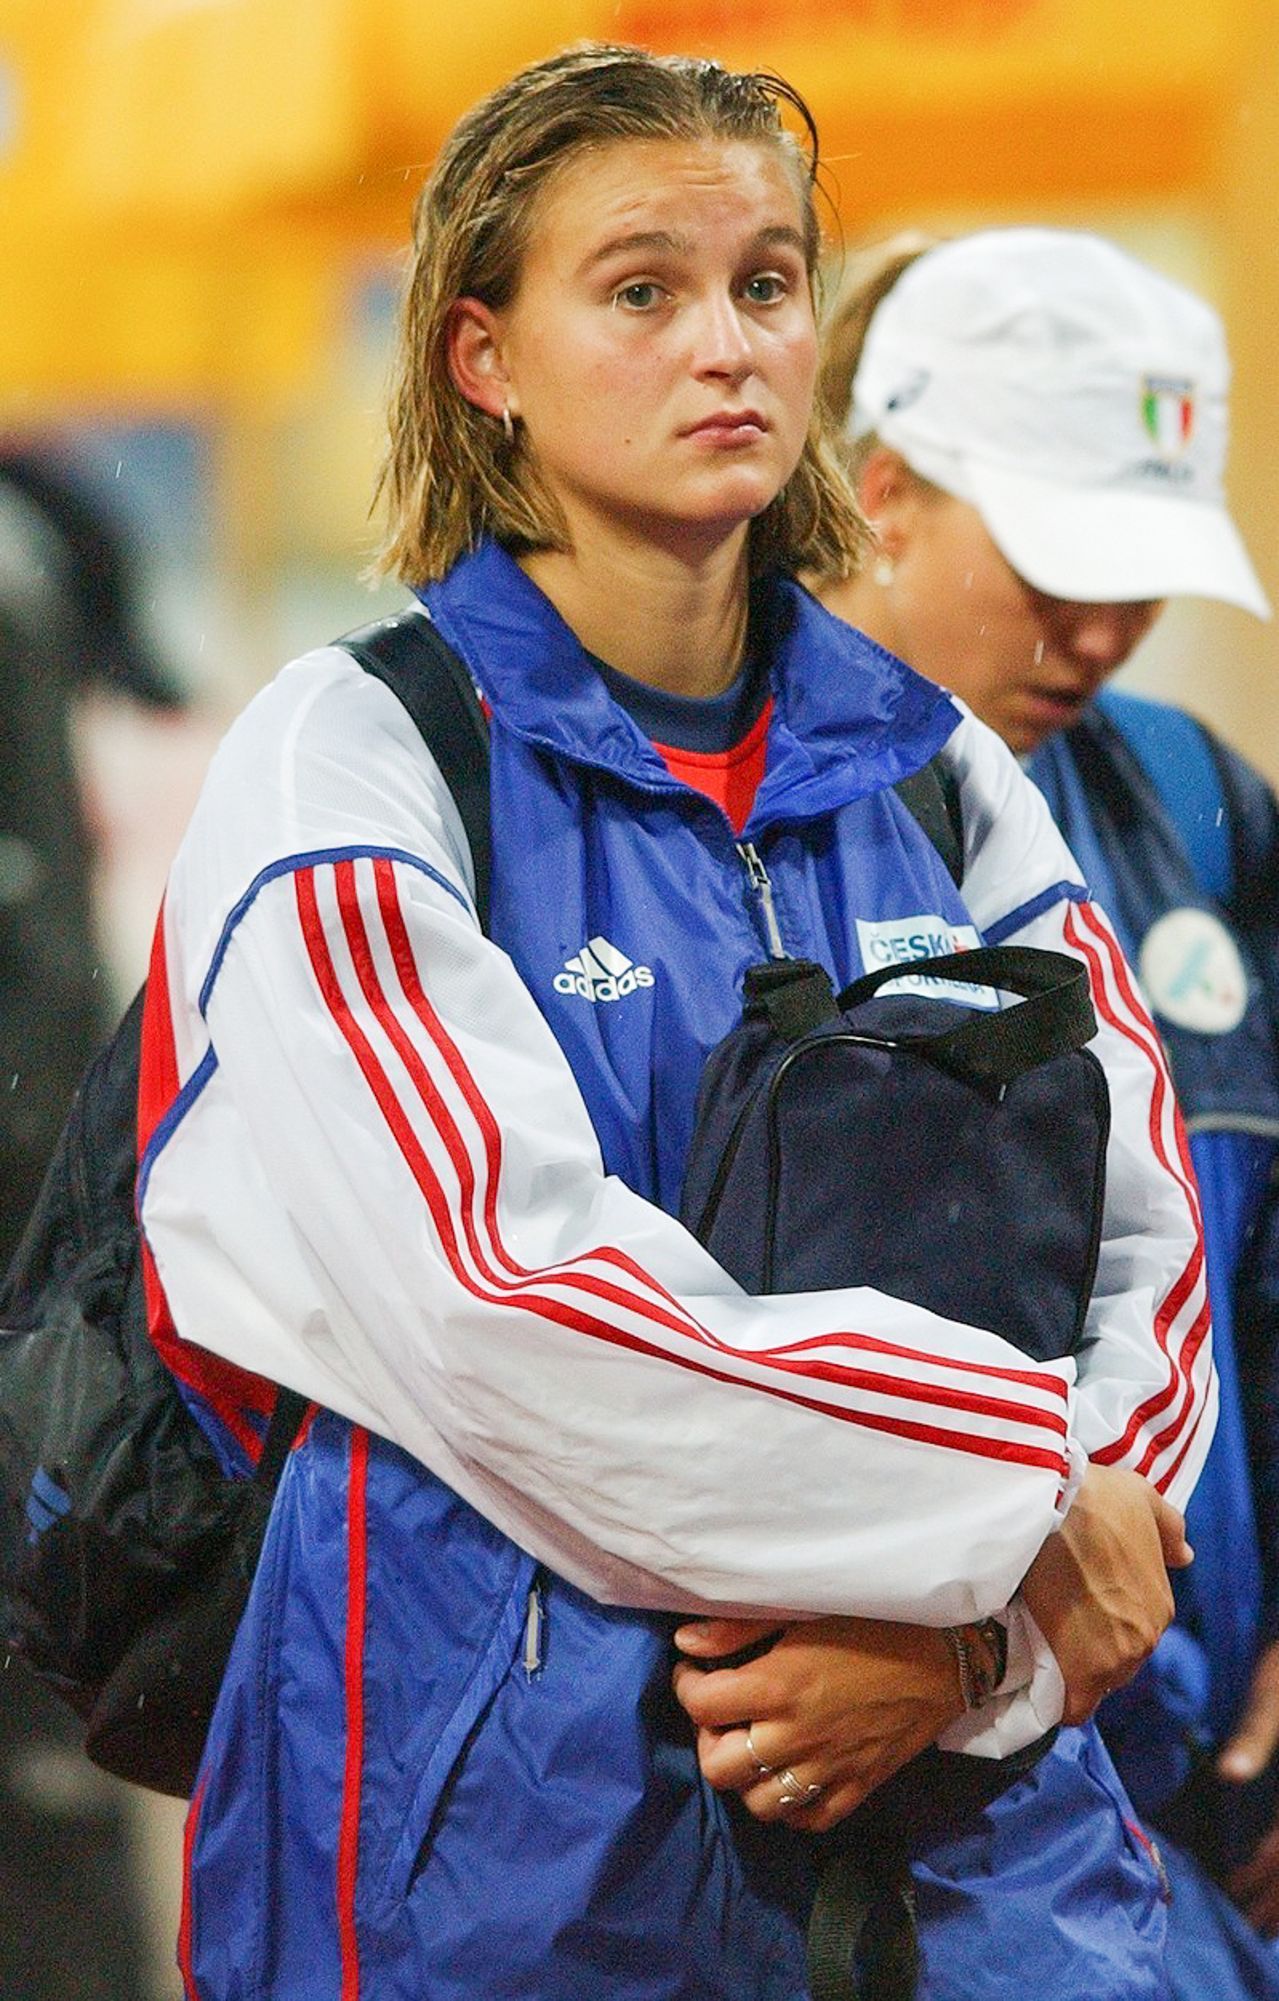 Barbora Špotáková, konec kariéry, oštěp, atletika, olympionik, olympijská vítězka, Sport